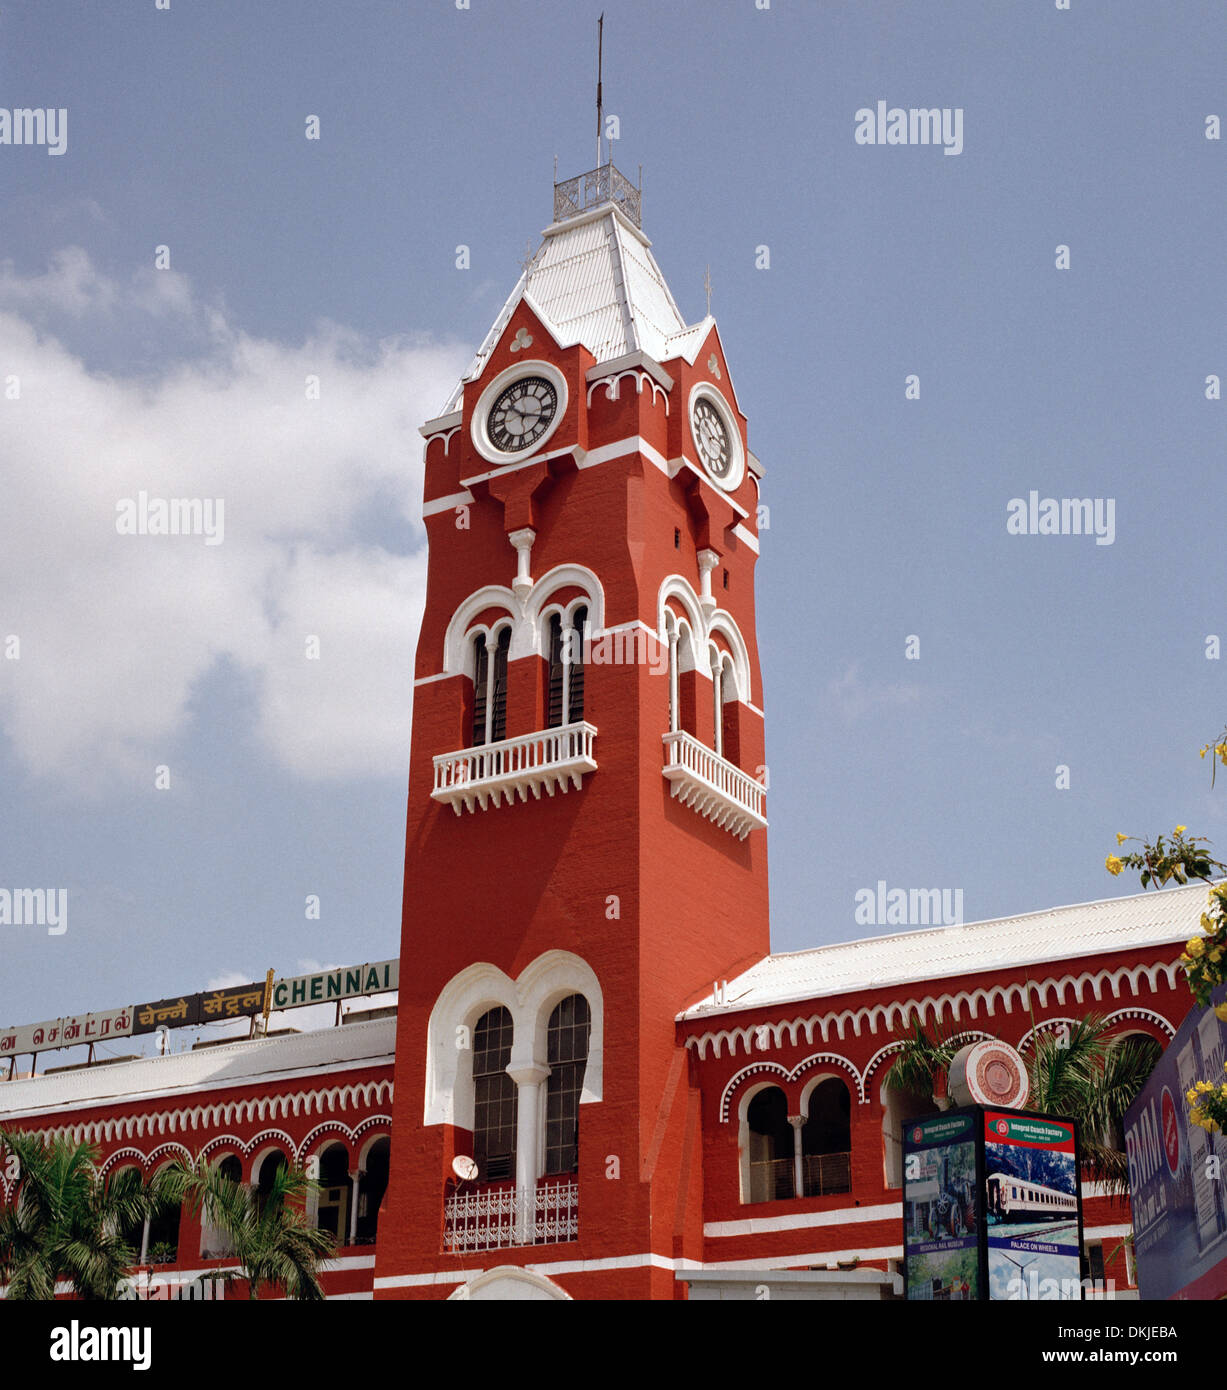 In treno La stazione ferroviaria di Chennai Madras in Tamil Nadu, nell India orientale in Asia del Sud. Architettura vittoriana edificio del trasporto ferroviario viaggi torre Foto Stock